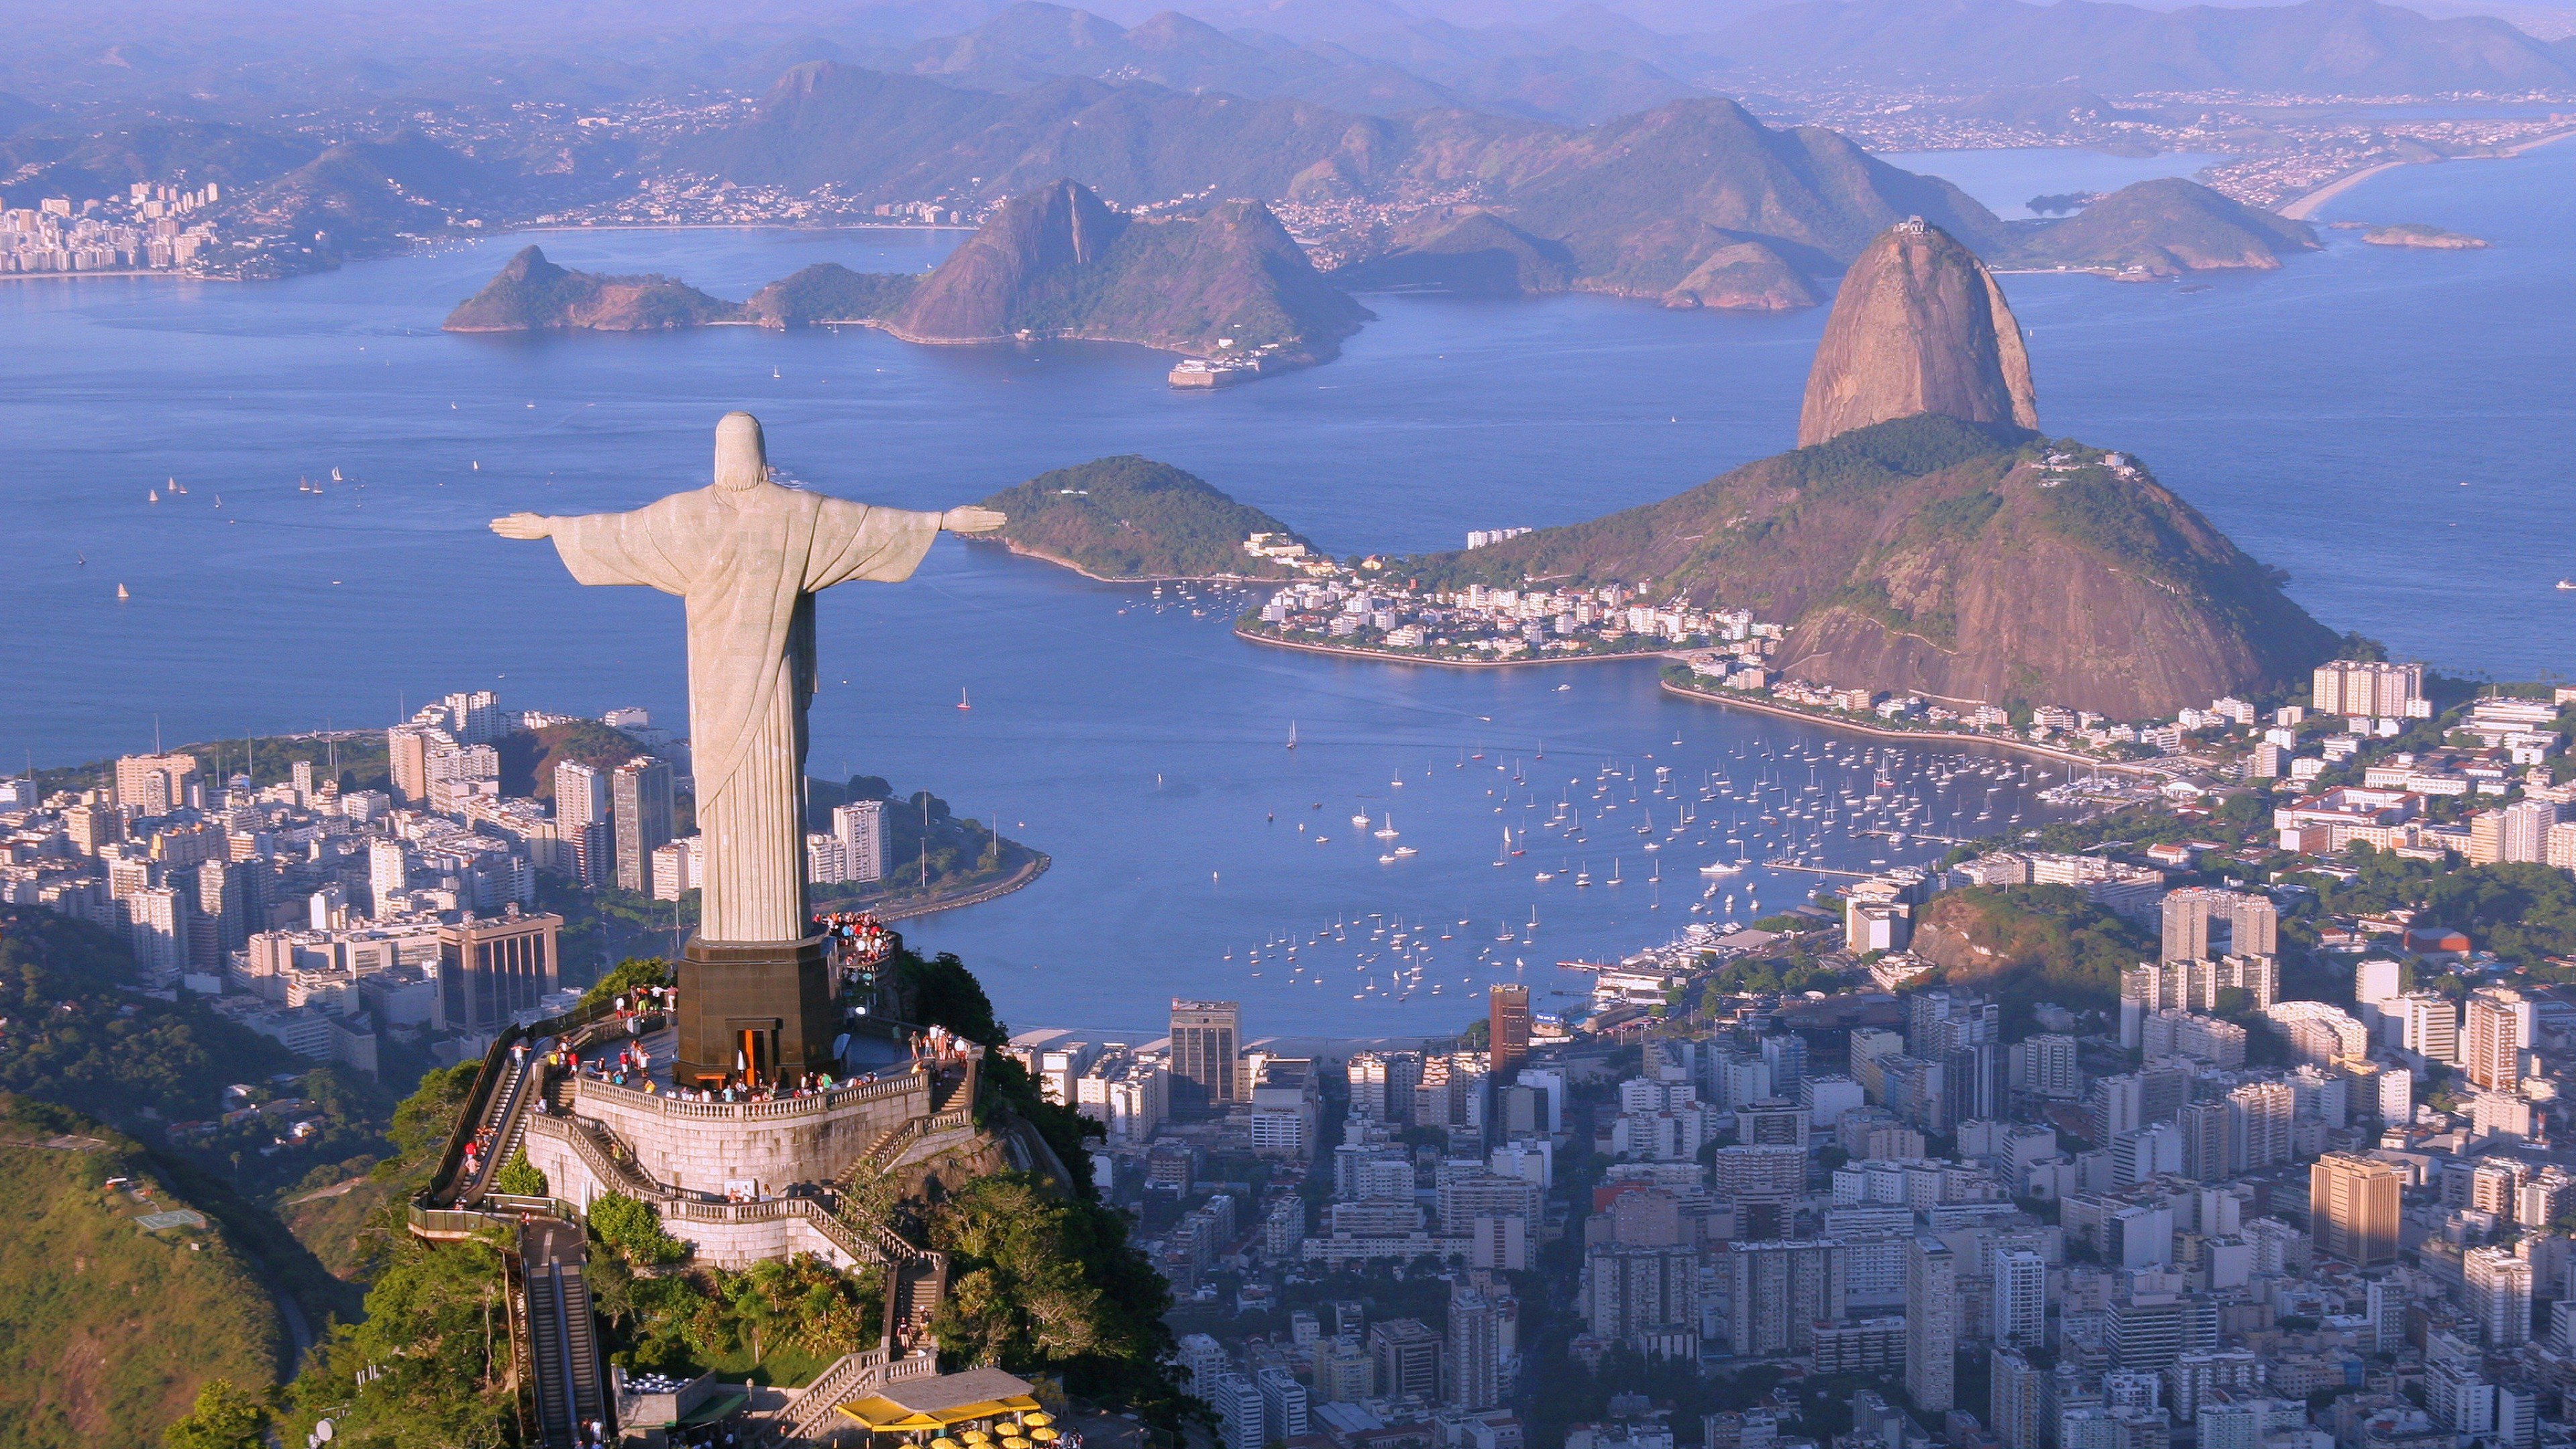 Fondos de pantalla Christ the Redeemer statue in Rio de Janeiro Brazil